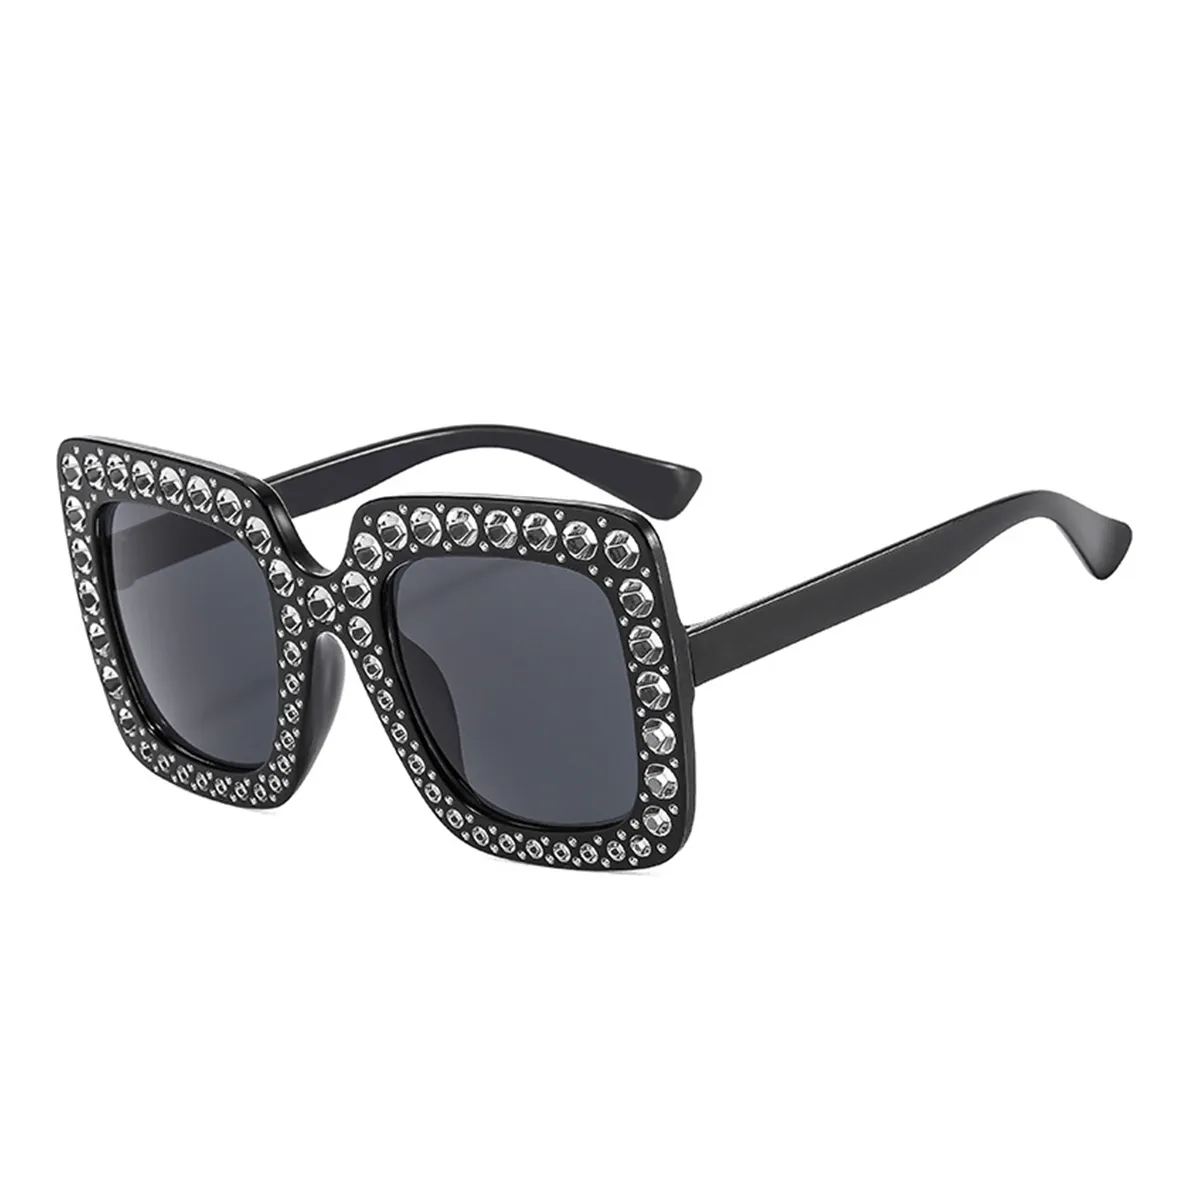 SANDY -  Black Sunglasses for Women